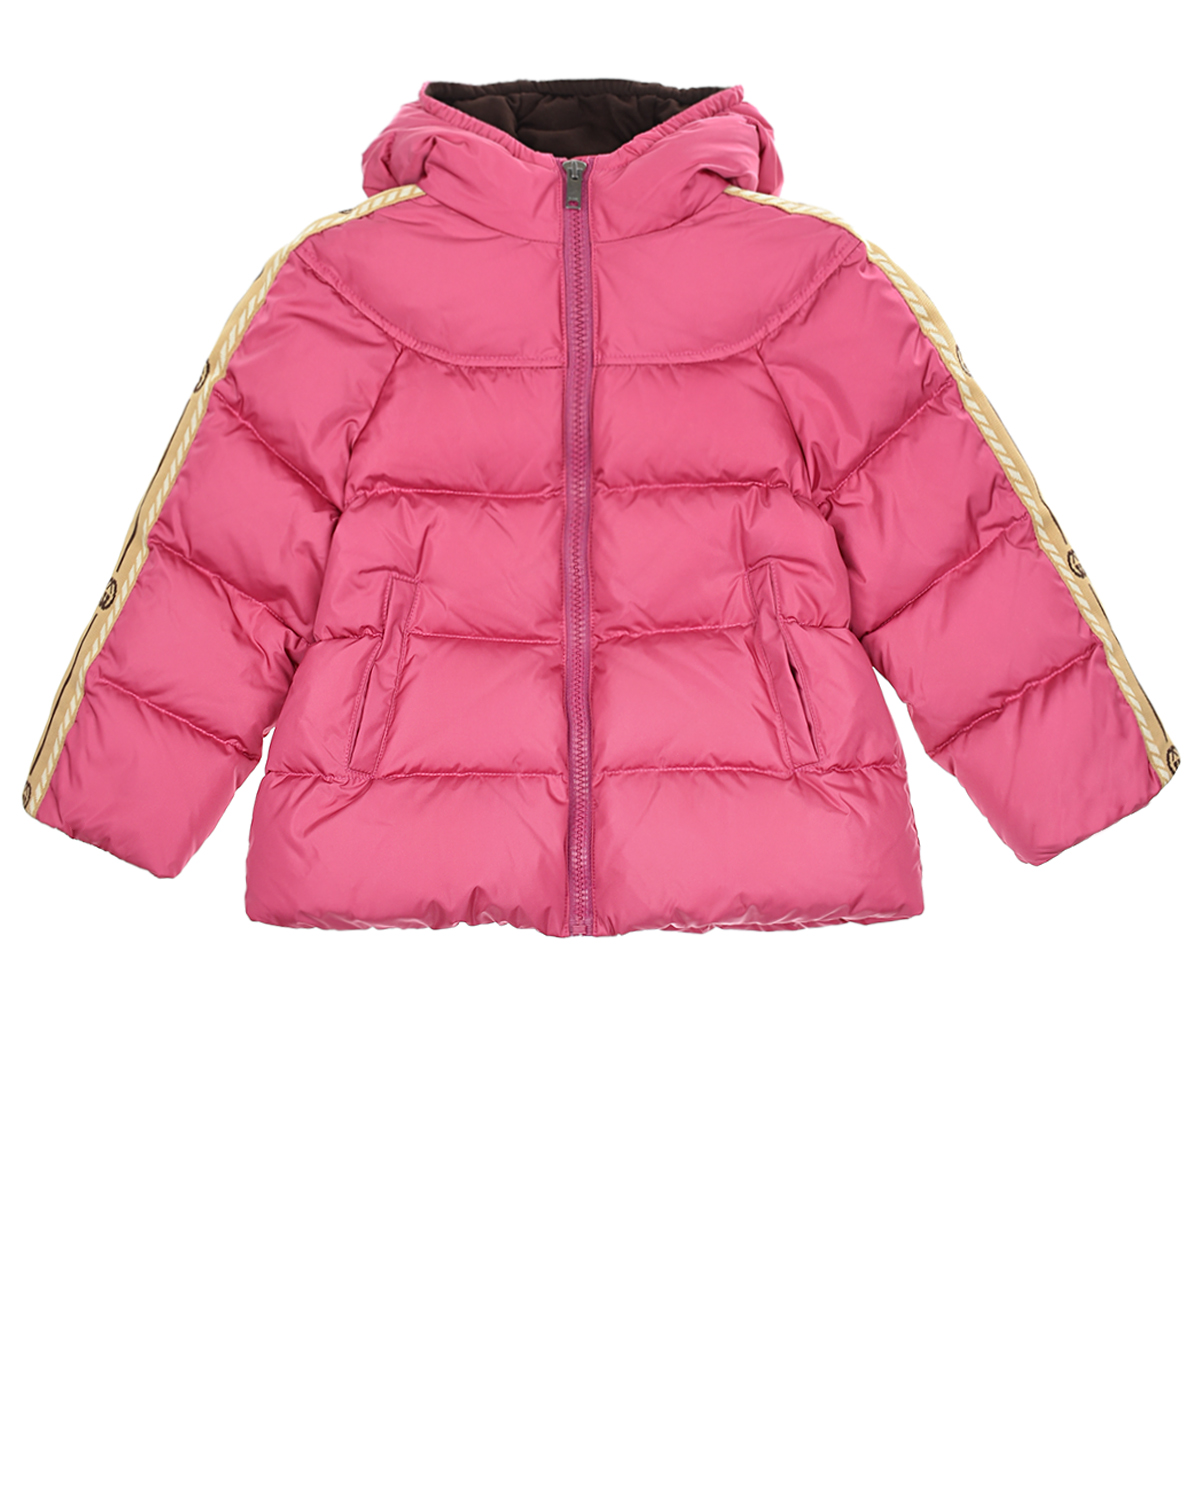 Стеганая куртка с трикотажными лампасами на рукавах GUCCI детская, размер 86, цвет розовый - фото 1